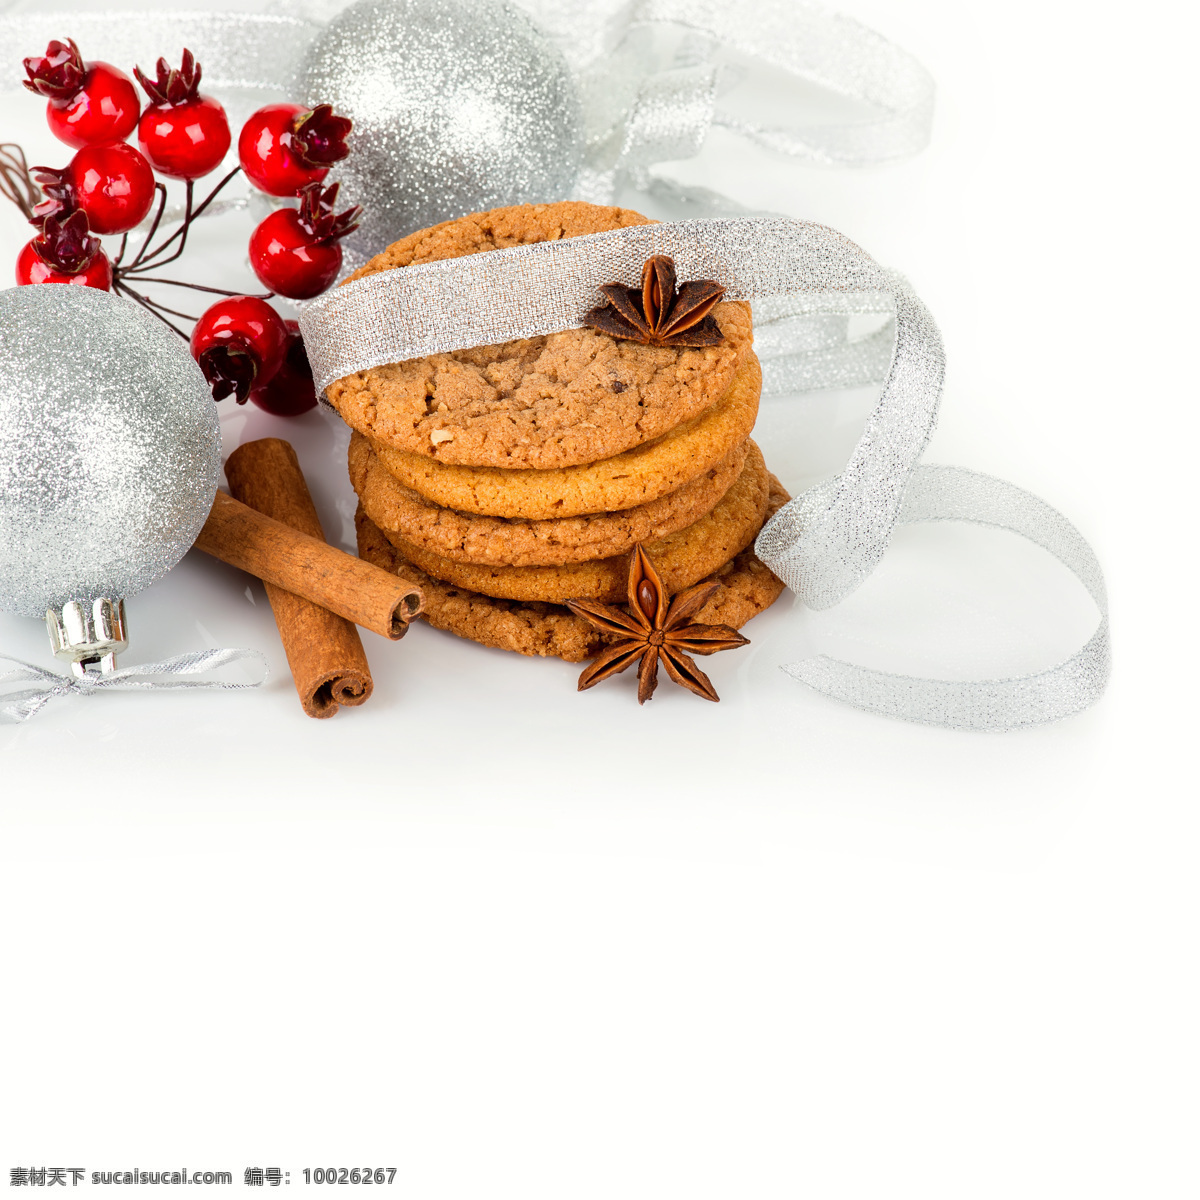 装饰球和食品 装饰球 红色果实 饼干 八角 圣诞节 中华美食 餐饮美食 白色